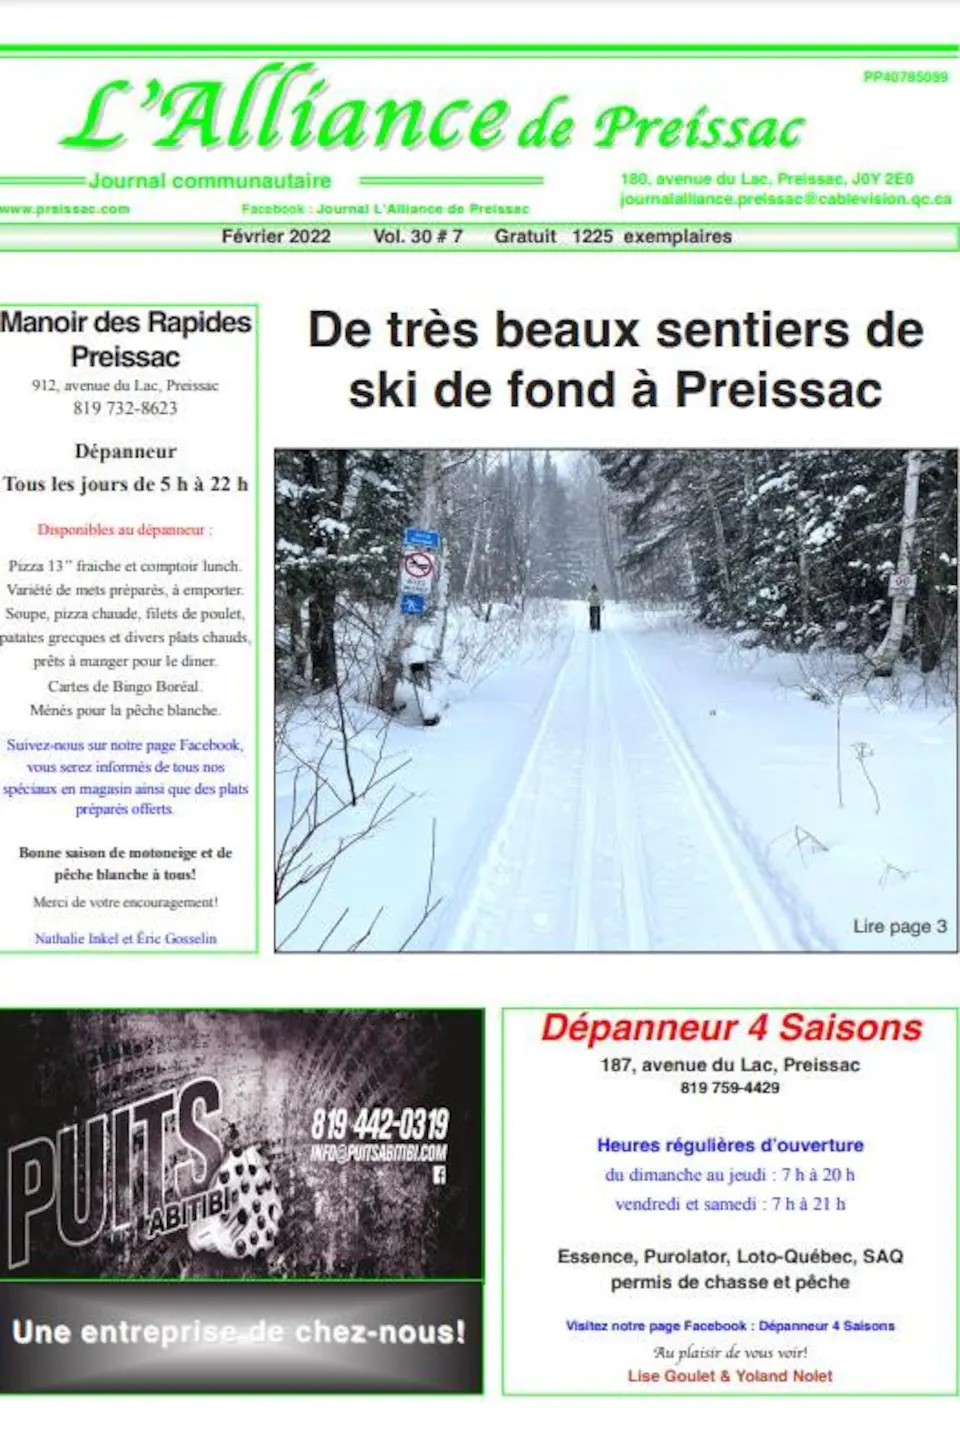 Le journal présente les «très beaux sentiers de ski de fond à Preissac ».